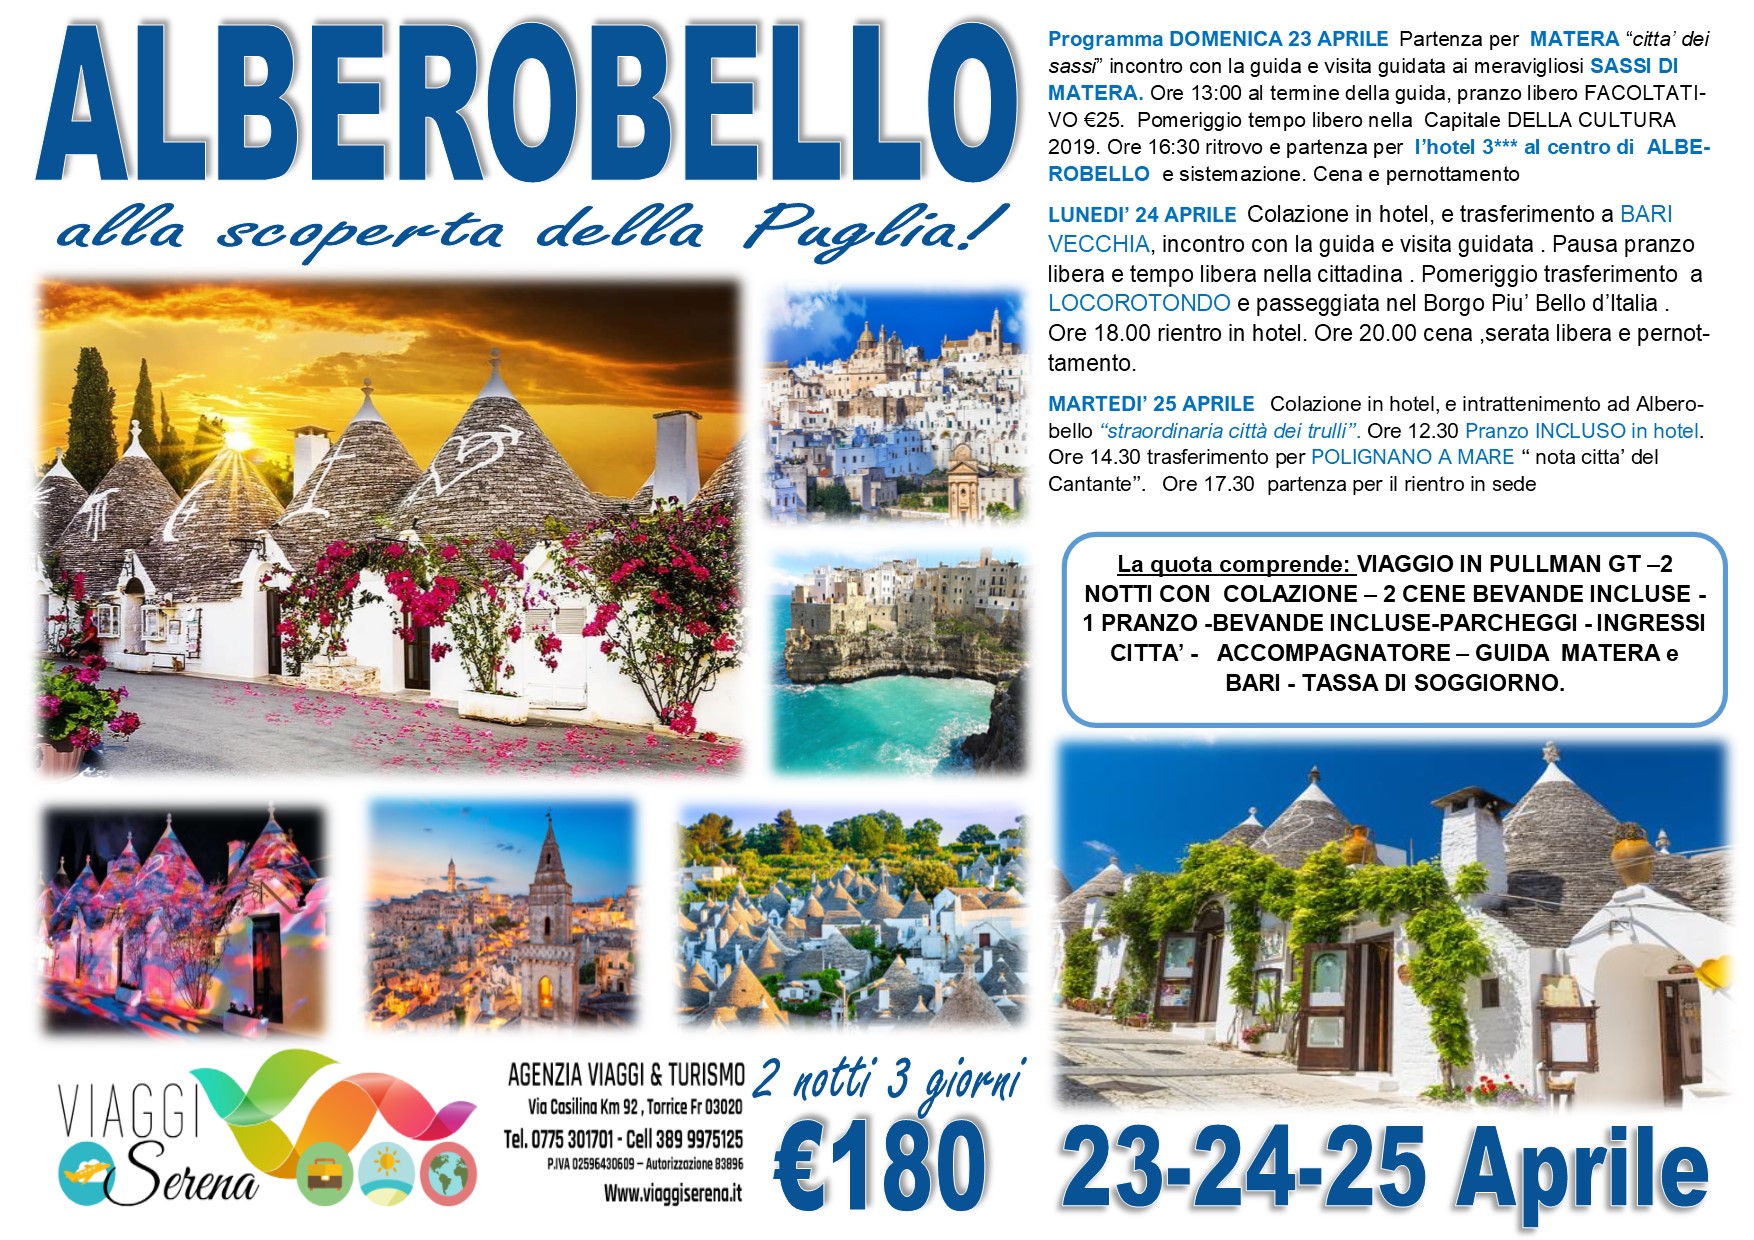 Viaggi di Gruppo: Alberobello, Matera, Locorotondo e Polignano a Mare 23-24-25 Aprile €180,00